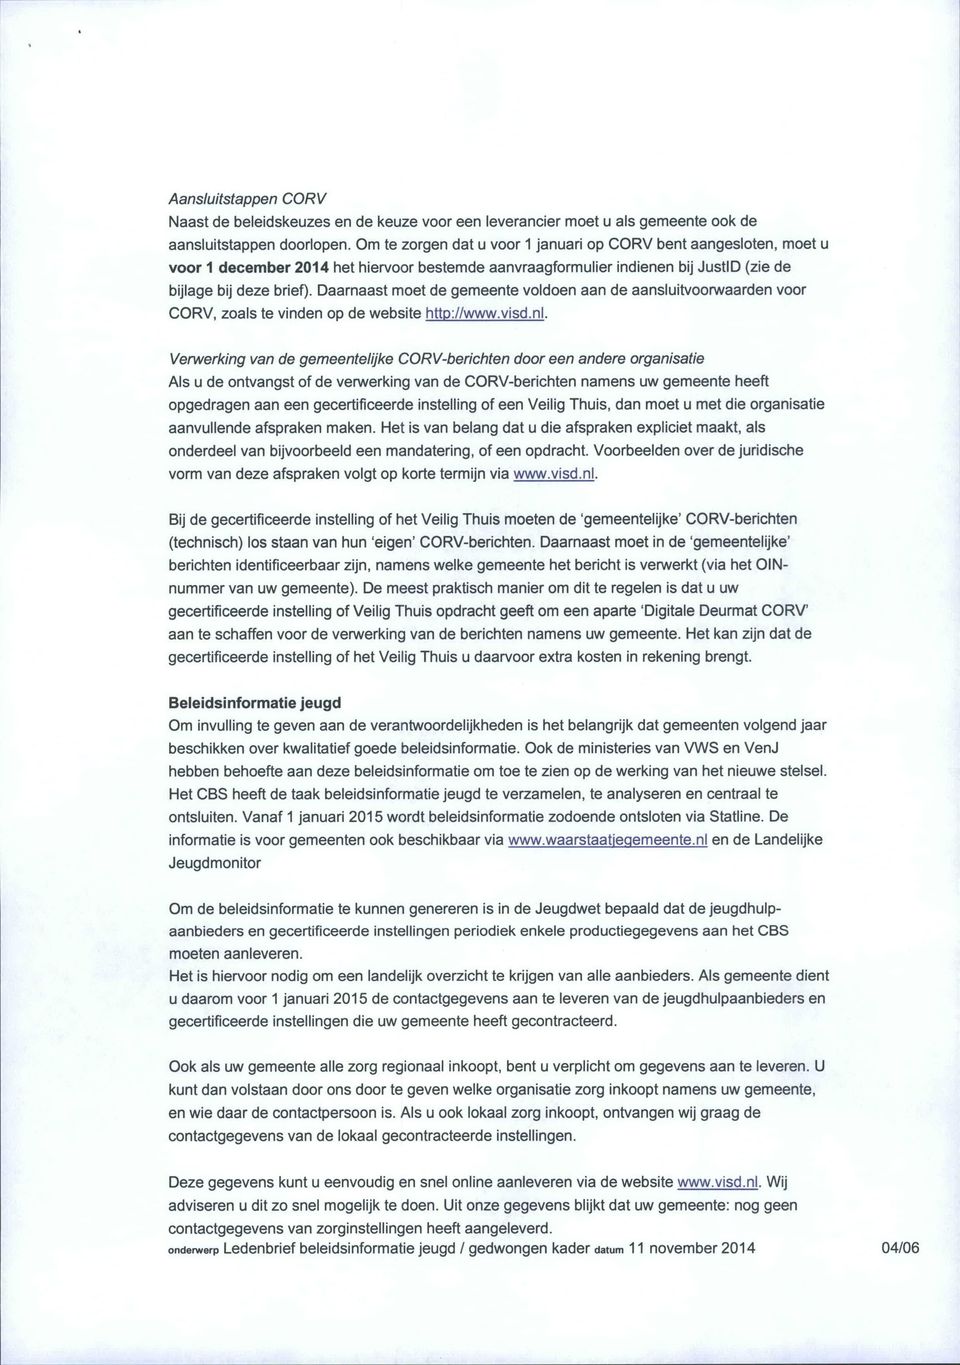 Daarnaast moet de gemeente voldoen aan de aansluitvoorwaarden voor CORV, zoals te vinden op de website http://www.visd.nl.